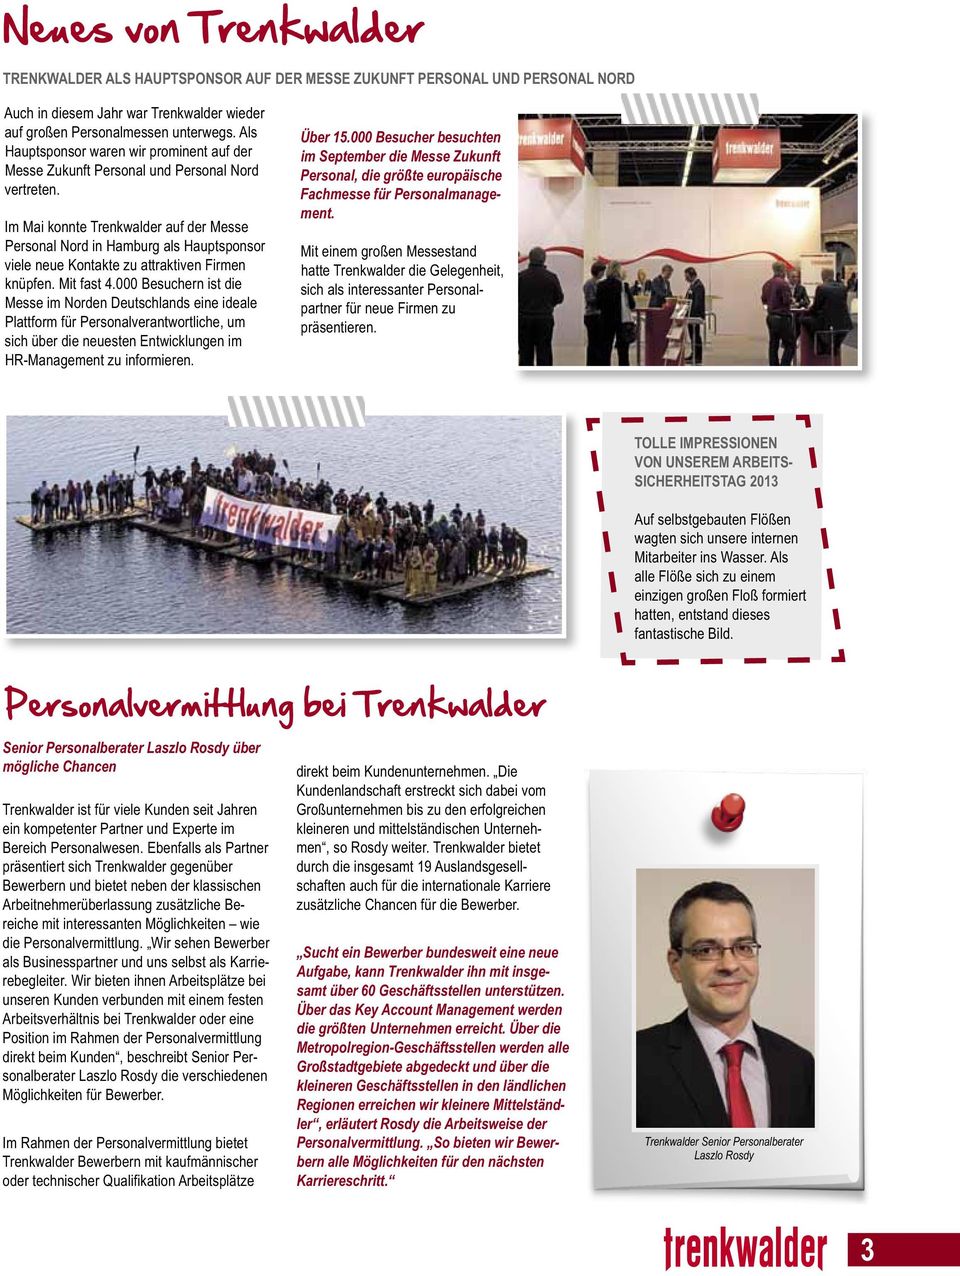 Im Mai konnte Trenkwalder auf der Messe Personal Nord in Hamburg als Hauptsponsor viele neue Kontakte zu attraktiven Firmen knüpfen. Mit fast 4.